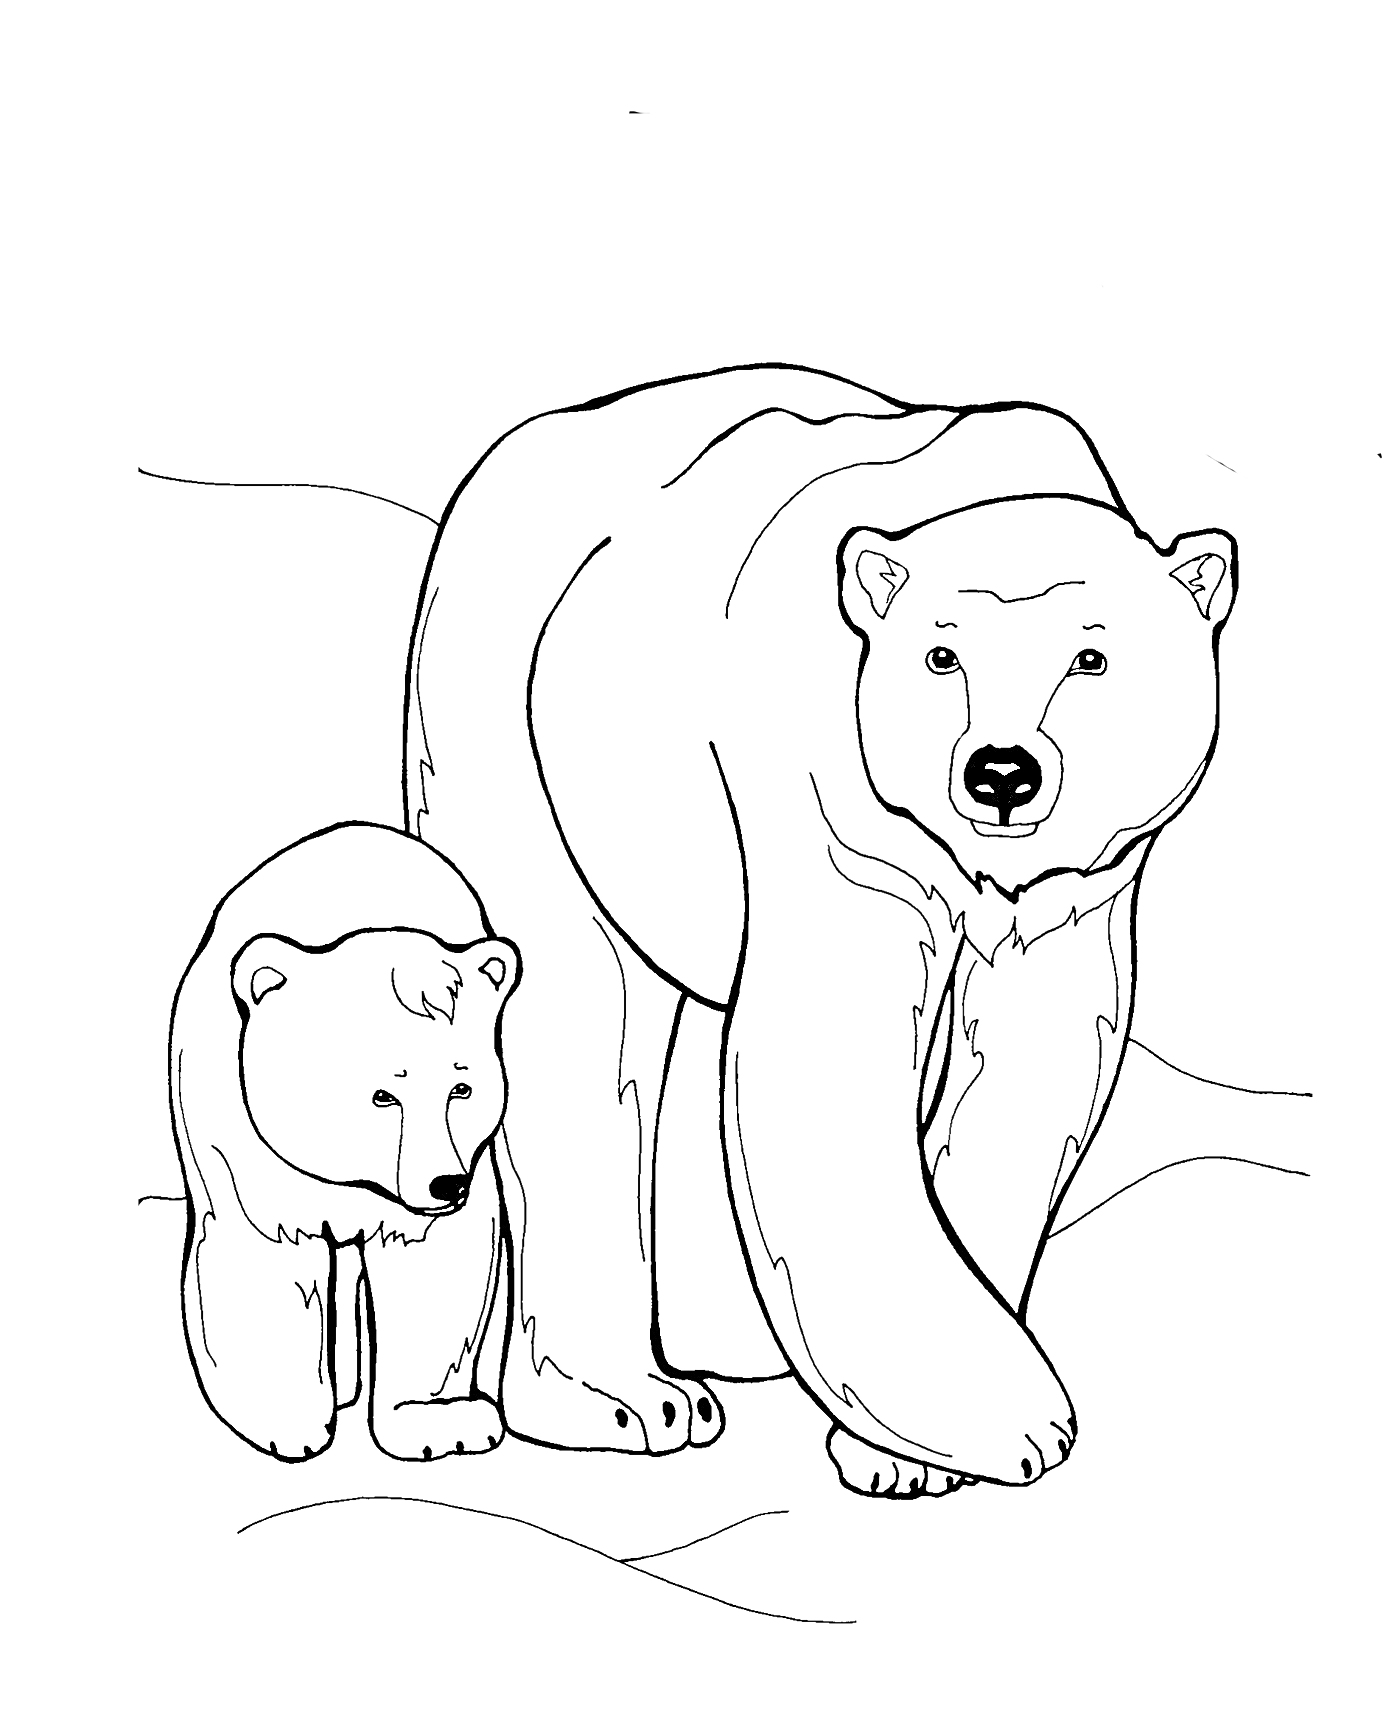 Два белых медведя - взрослый медведь и медвежонок на фоне снежного пейзажа